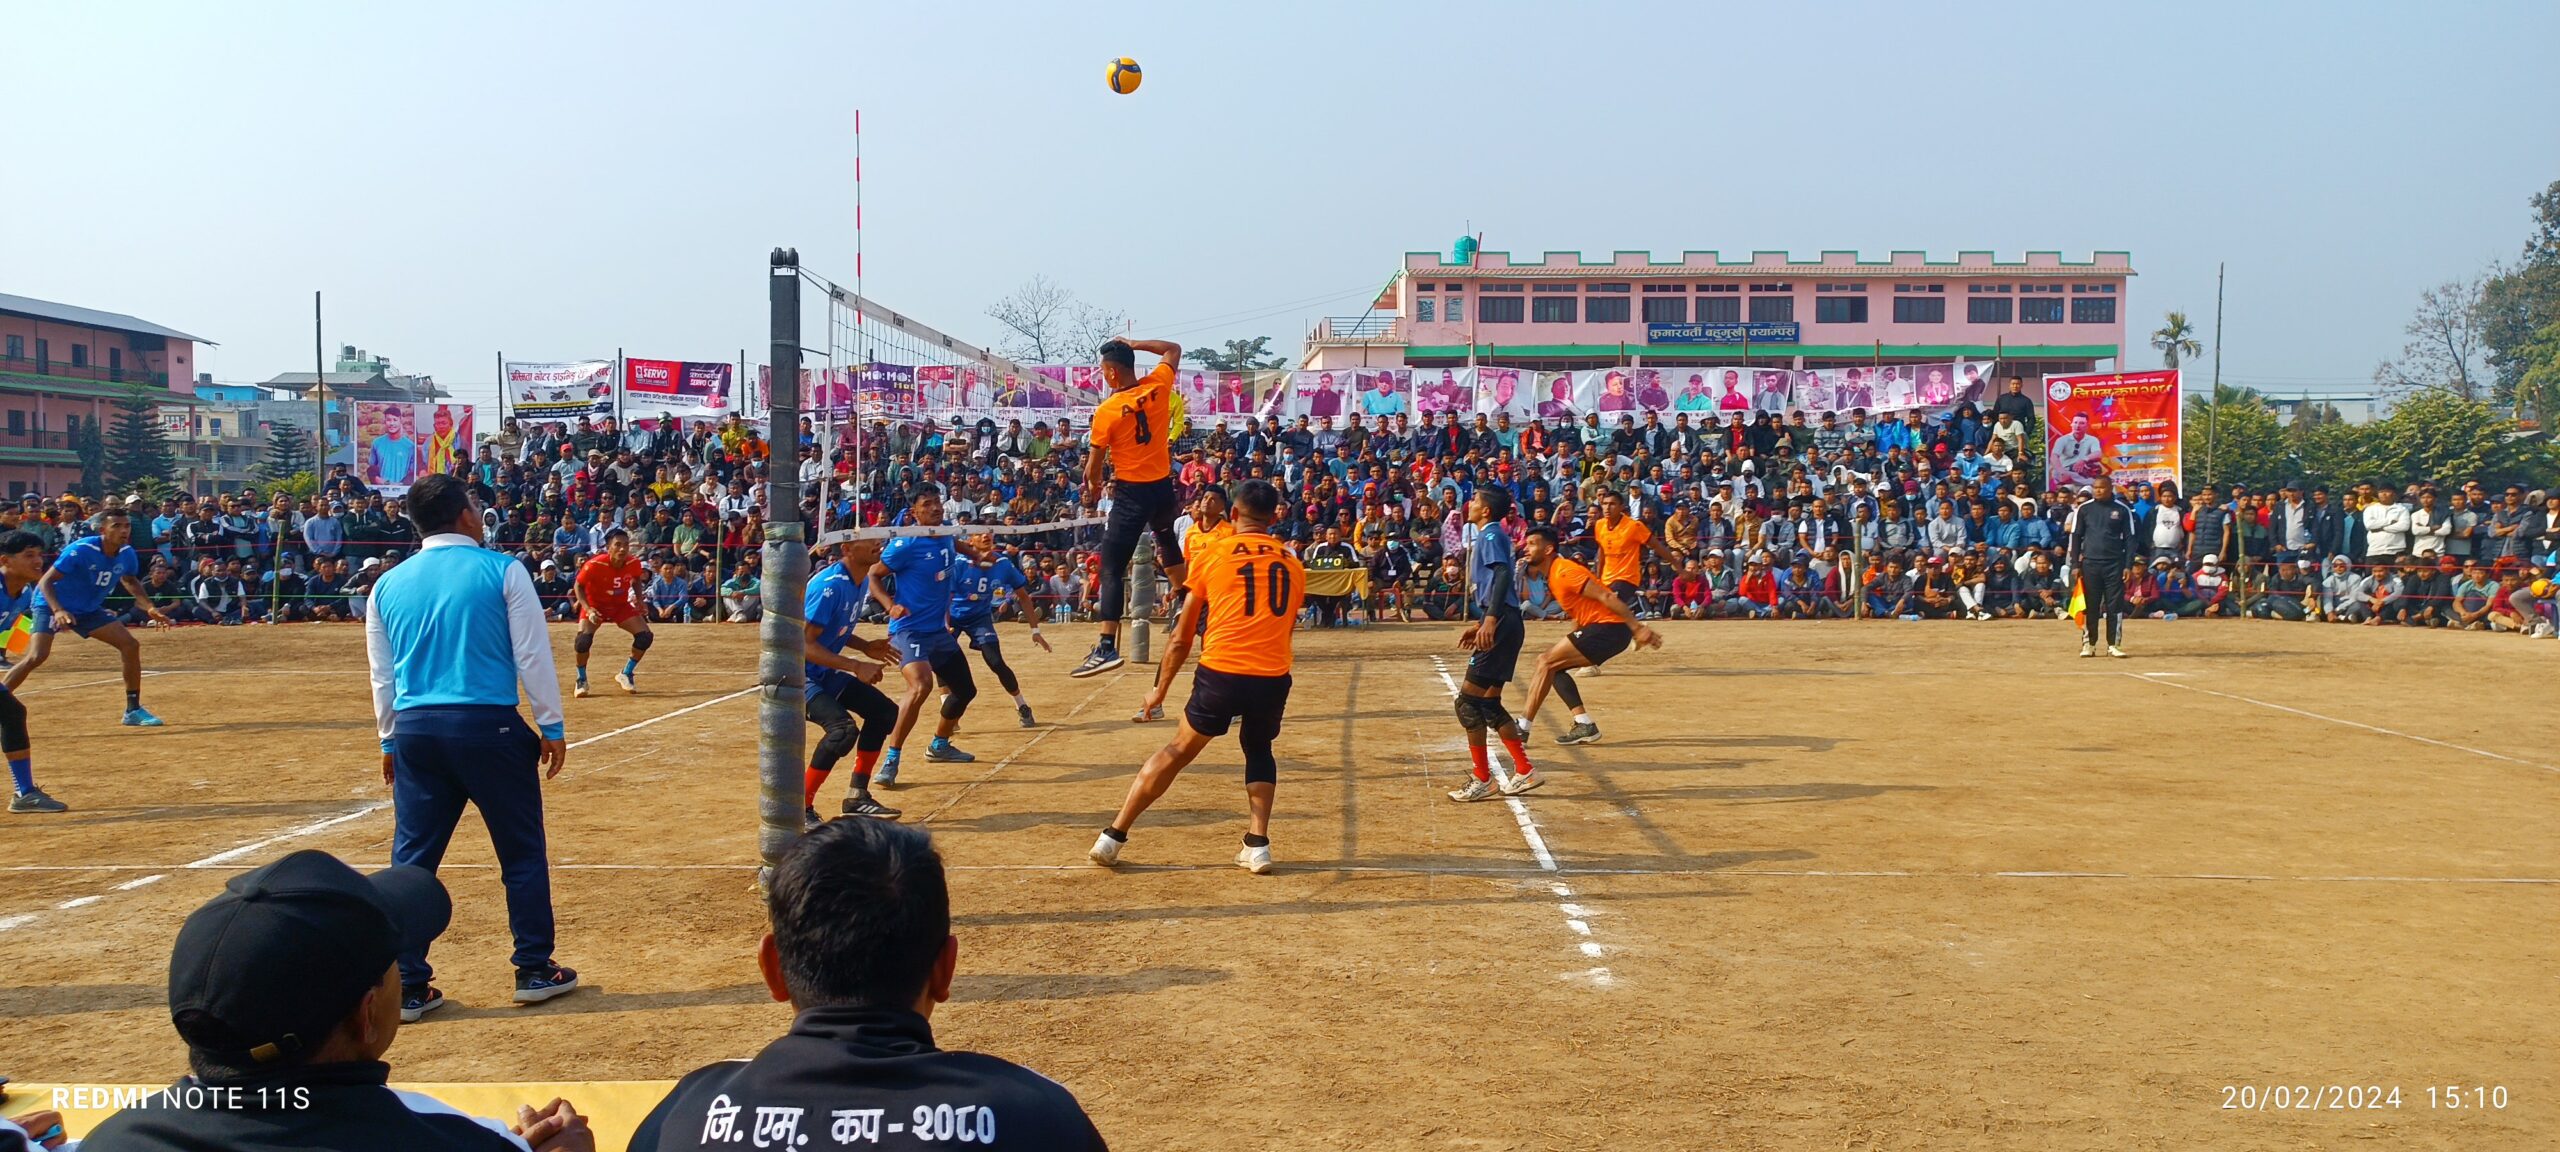 प्रथम जिएम कप राष्ट्रिय भलिबलको उपाधि नेपाल पुलिसलाई